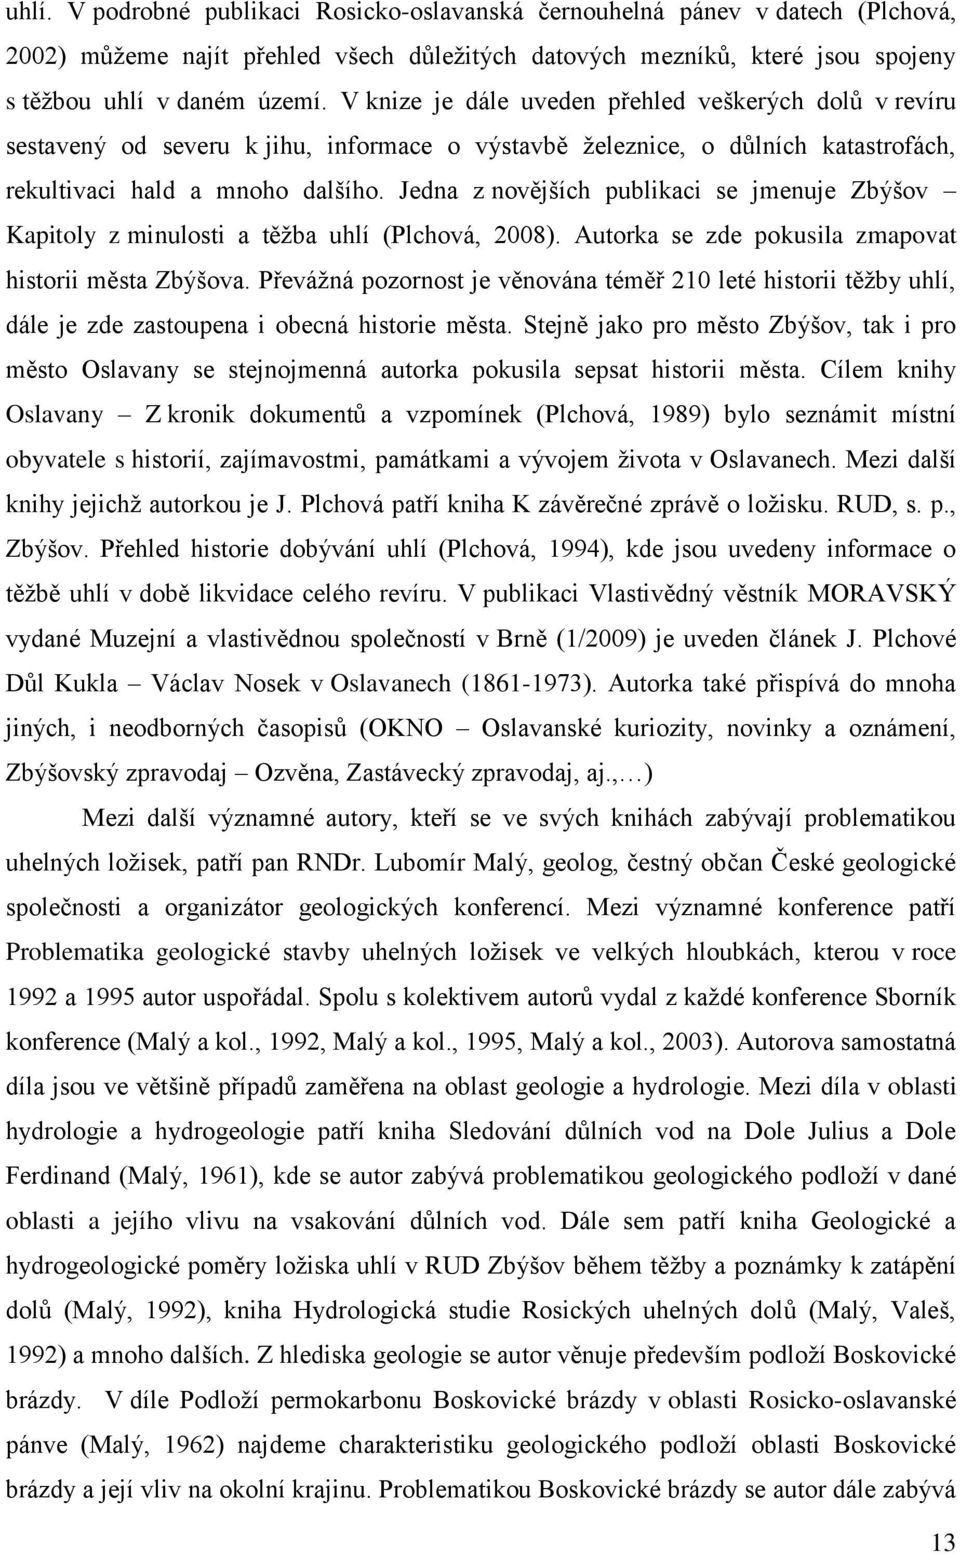 Jedna z novějších publikaci se jmenuje Zbýšov Kapitoly z minulosti a těţba uhlí (Plchová, 2008). Autorka se zde pokusila zmapovat historii města Zbýšova.